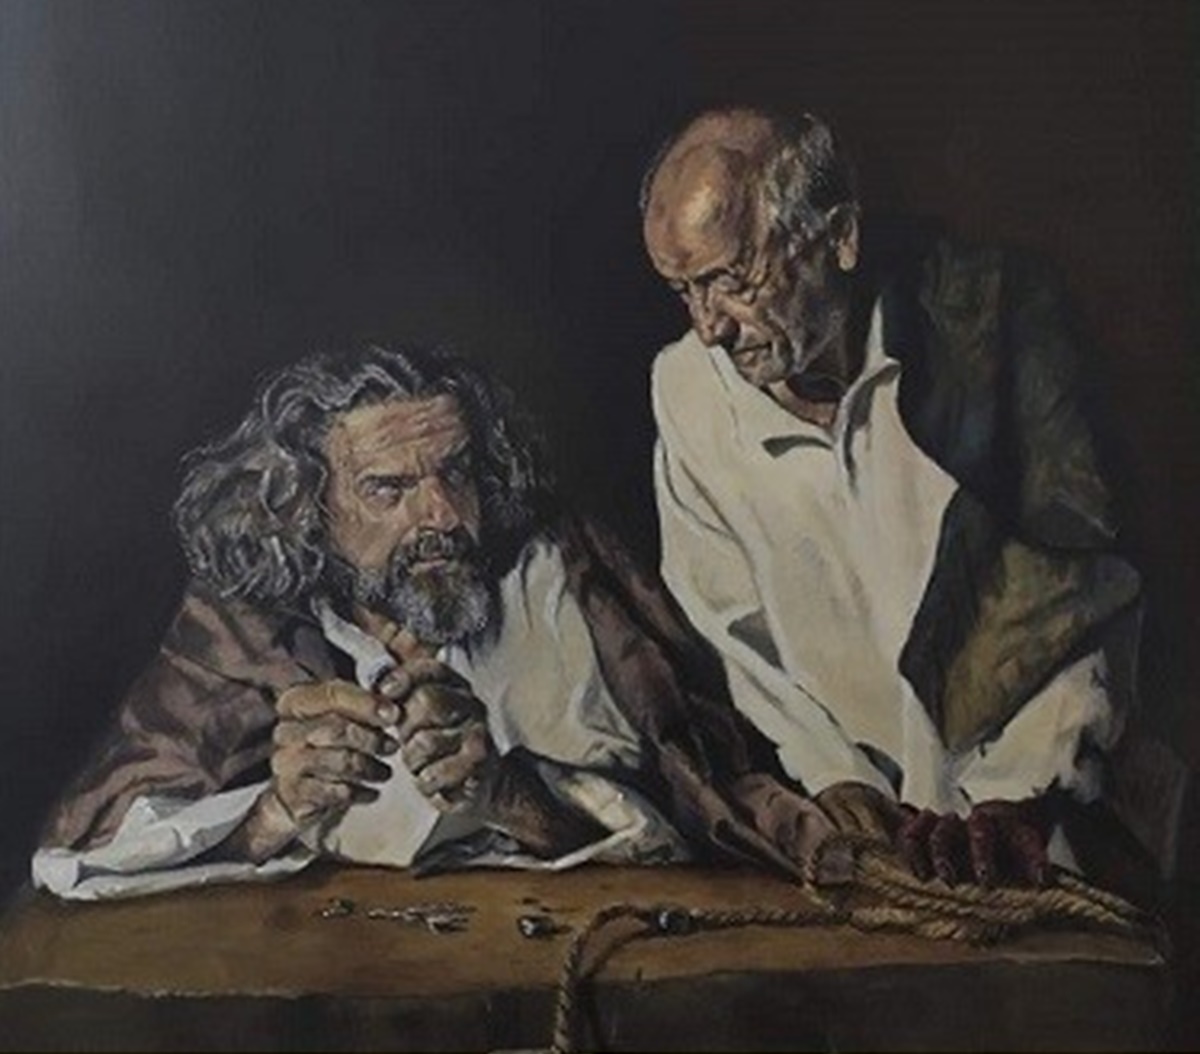 A Reggio la presentazione dell’opera “Giuda e il diavolo” del pittore Alessandro Allegra